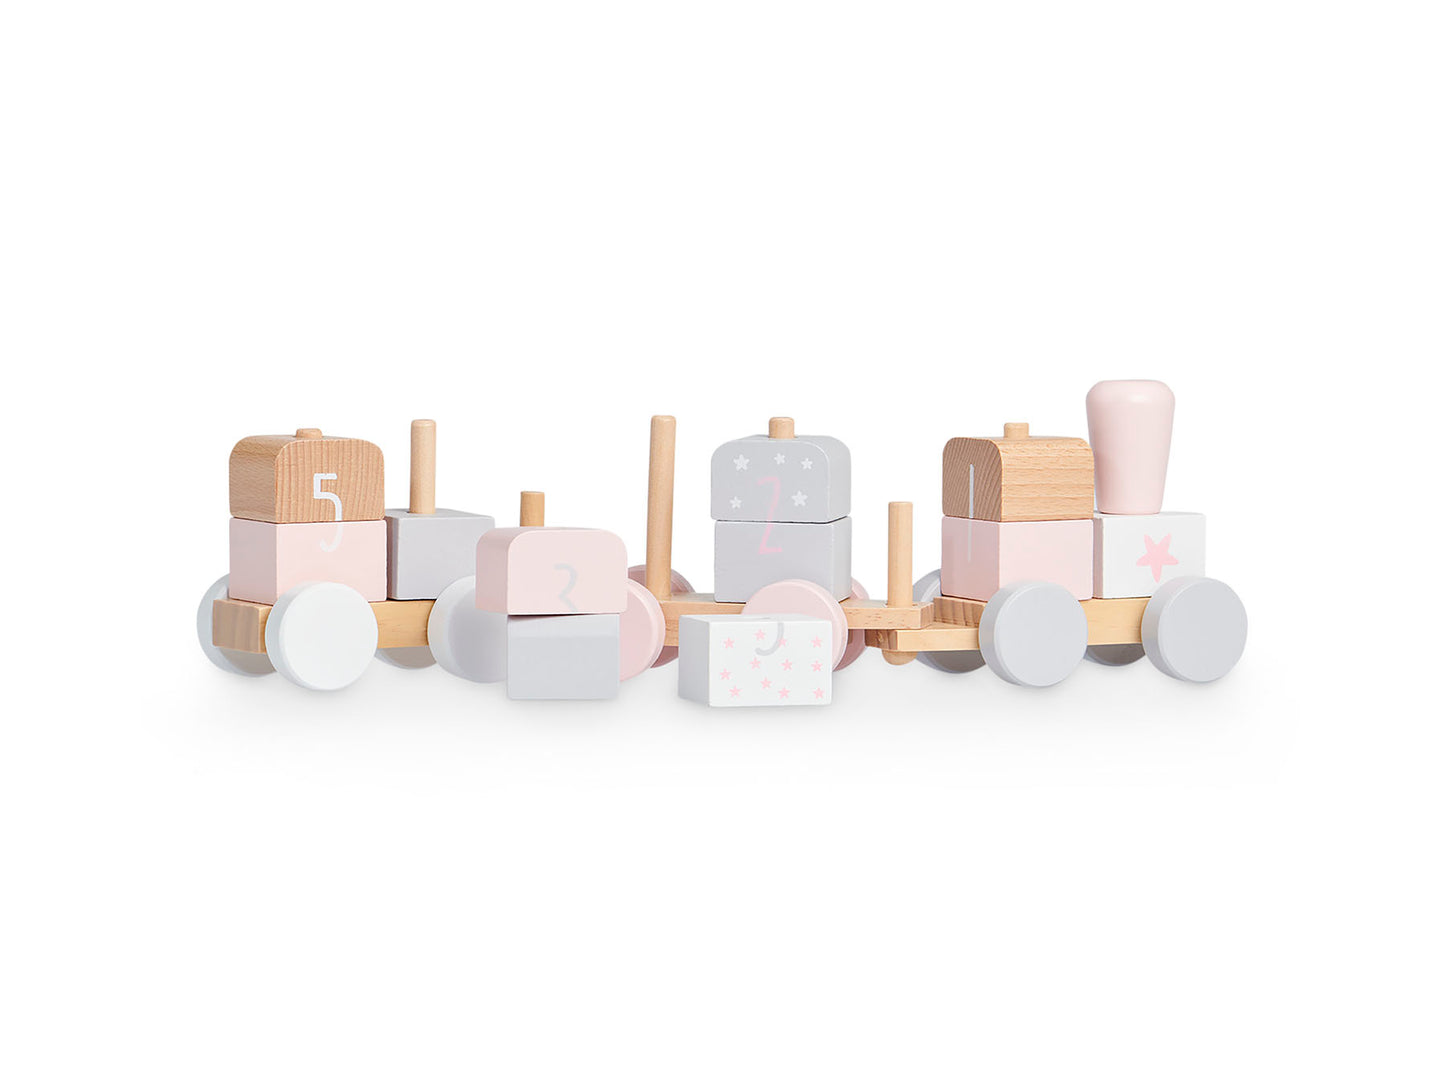 Houten speelgoedtrein white/pink